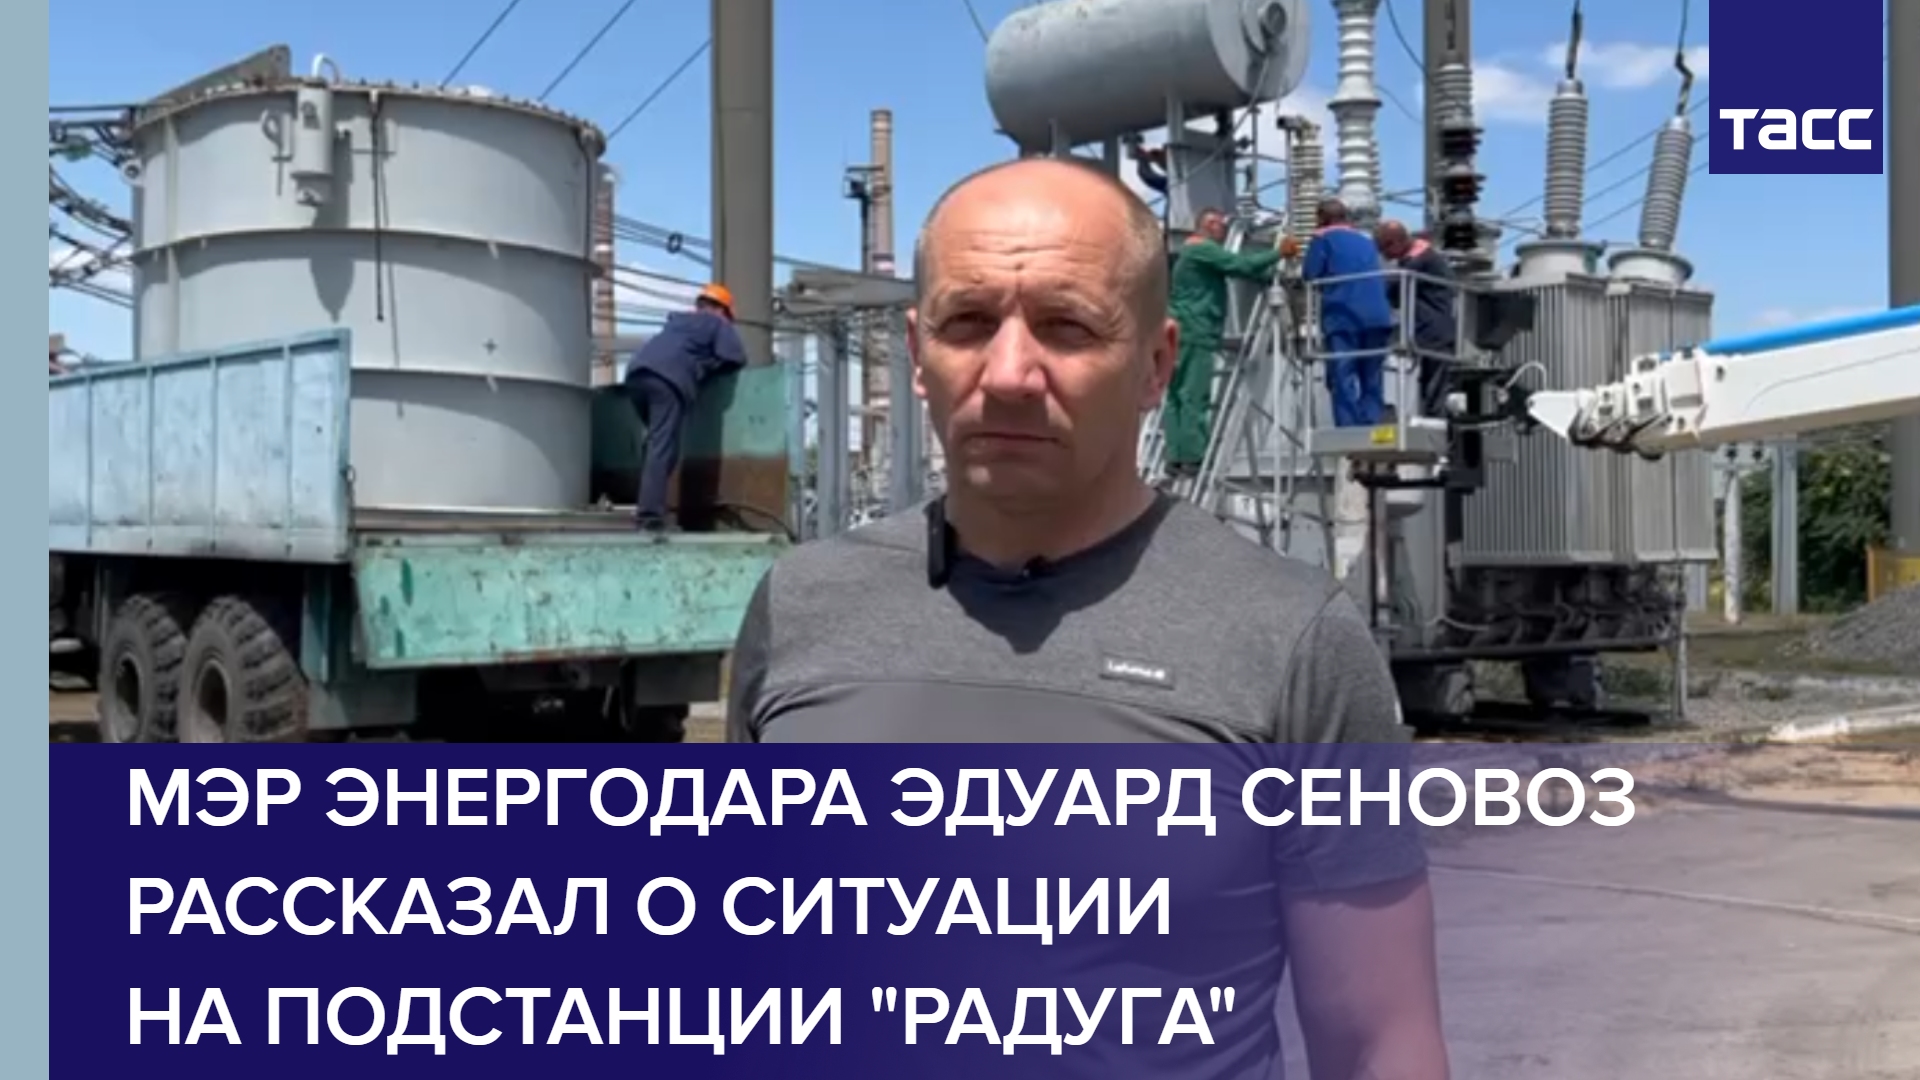 Мэр Энергодара Эдуард Сеновоз рассказал о ситуации на подстанции "Радуга"